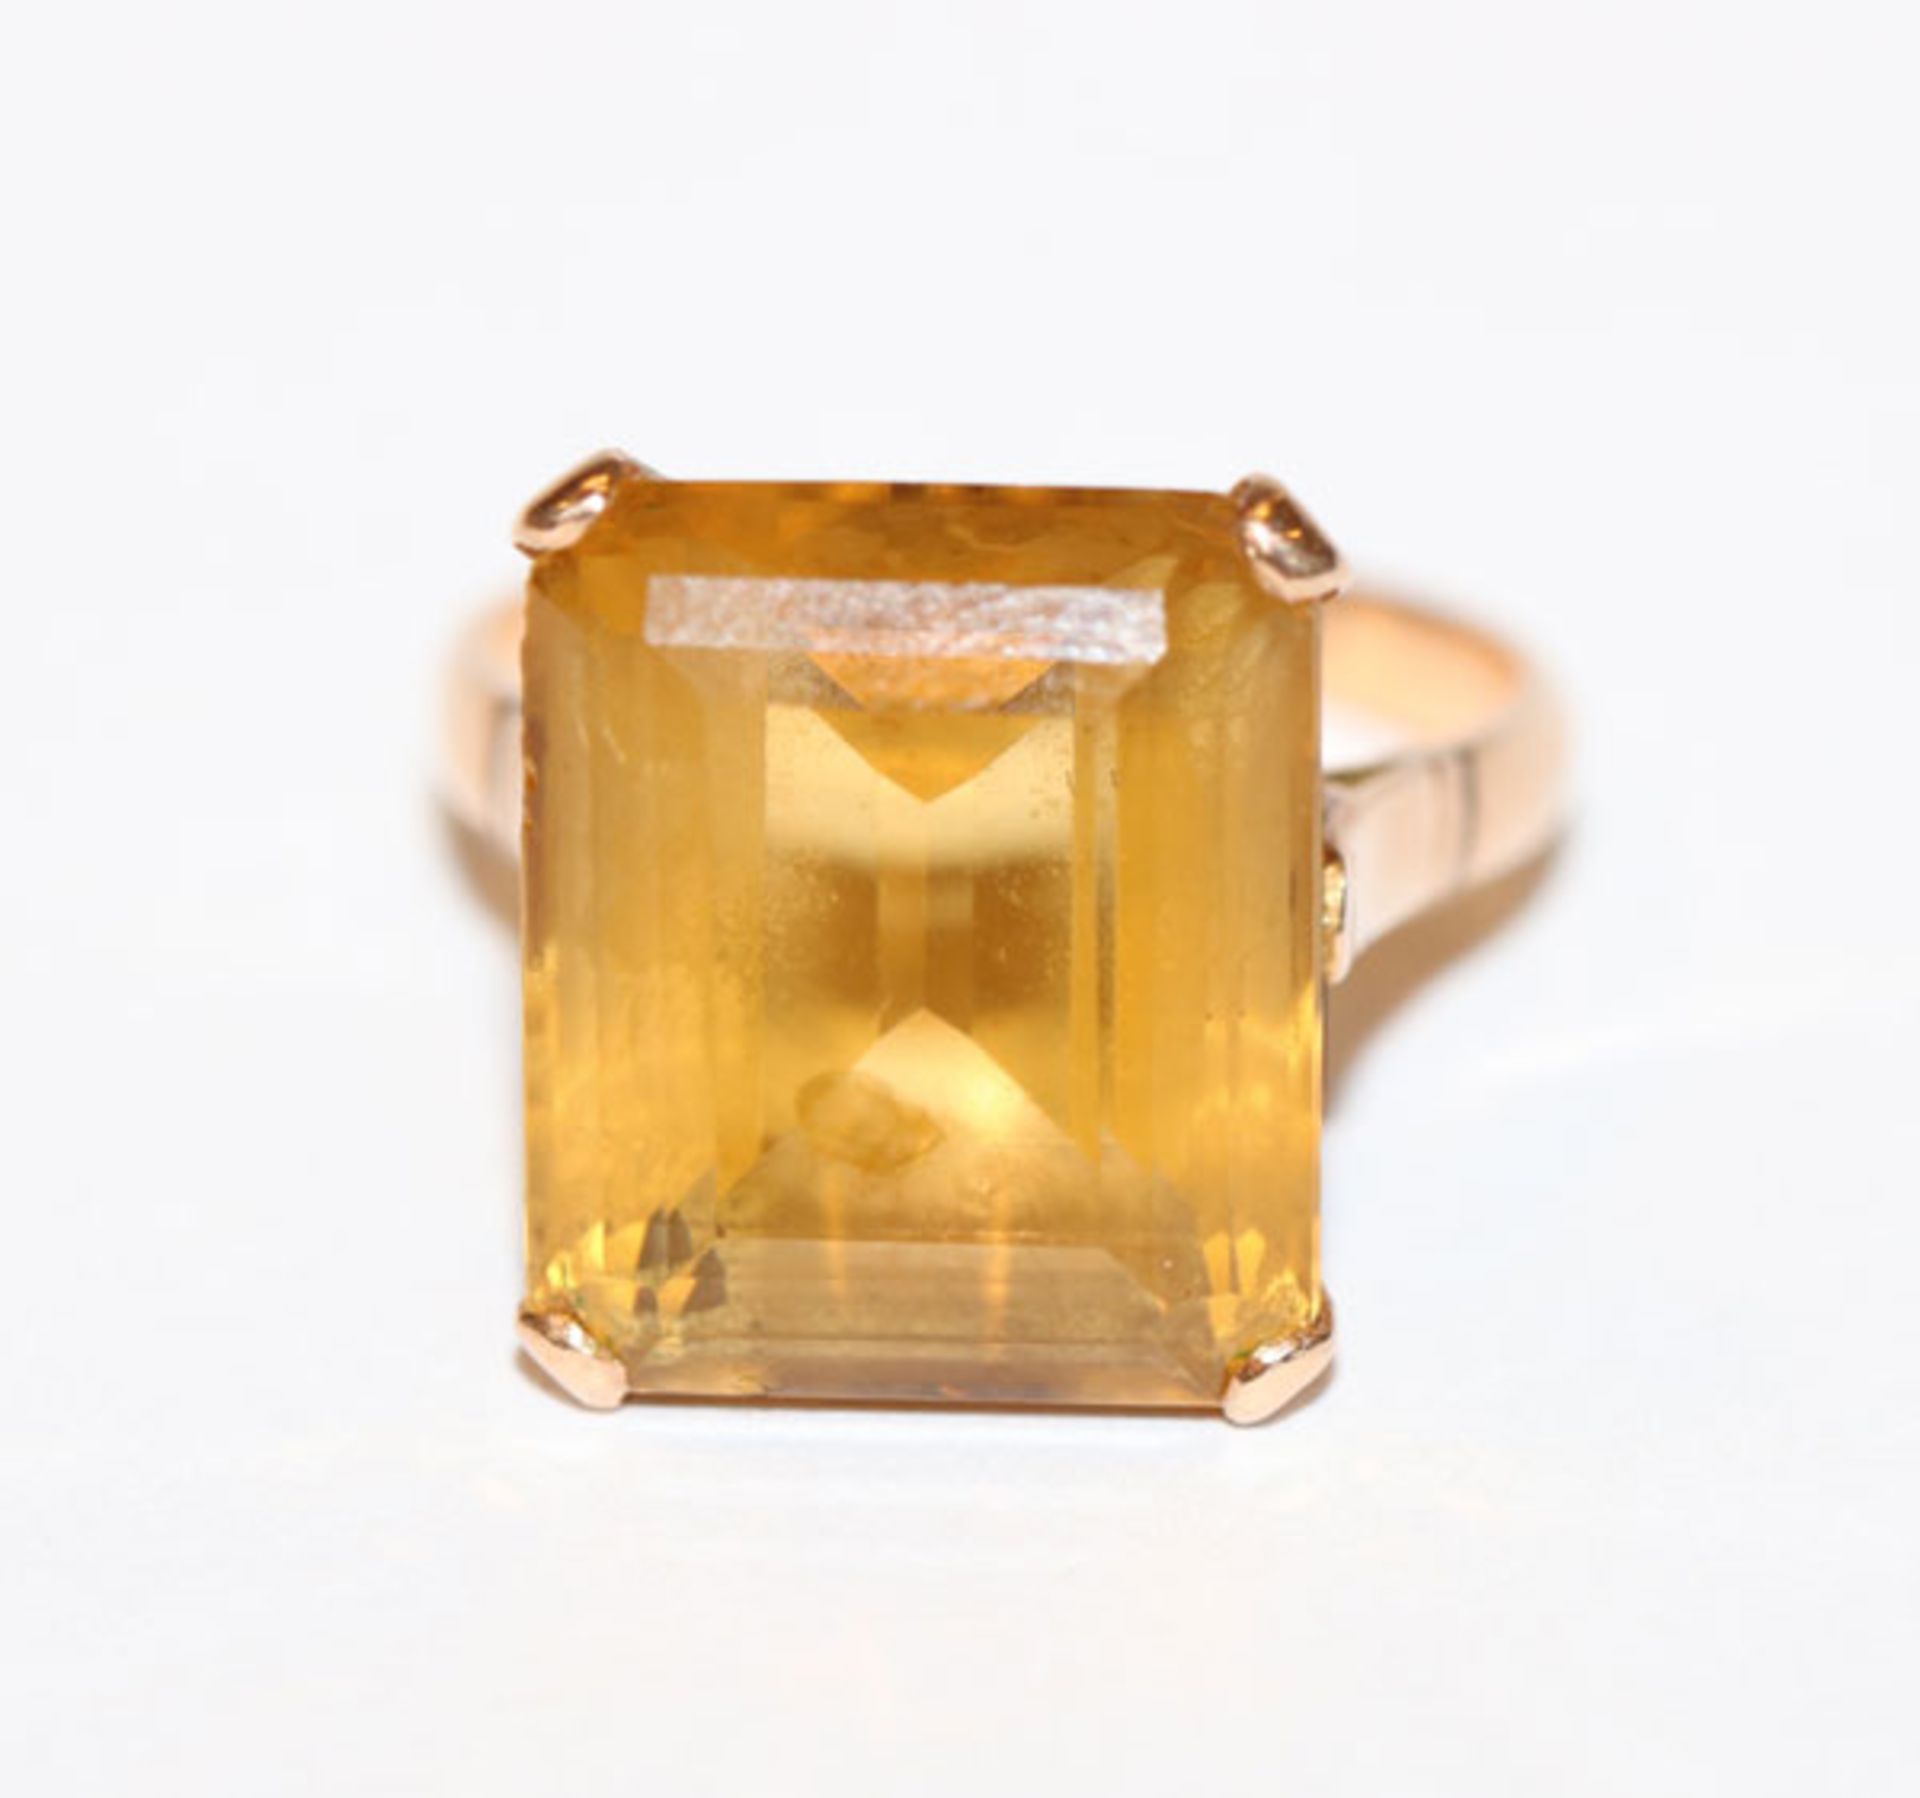 14 k Gelbgold (geprüft) Ring mit Topas, Gr. 52, 5,6 gr.